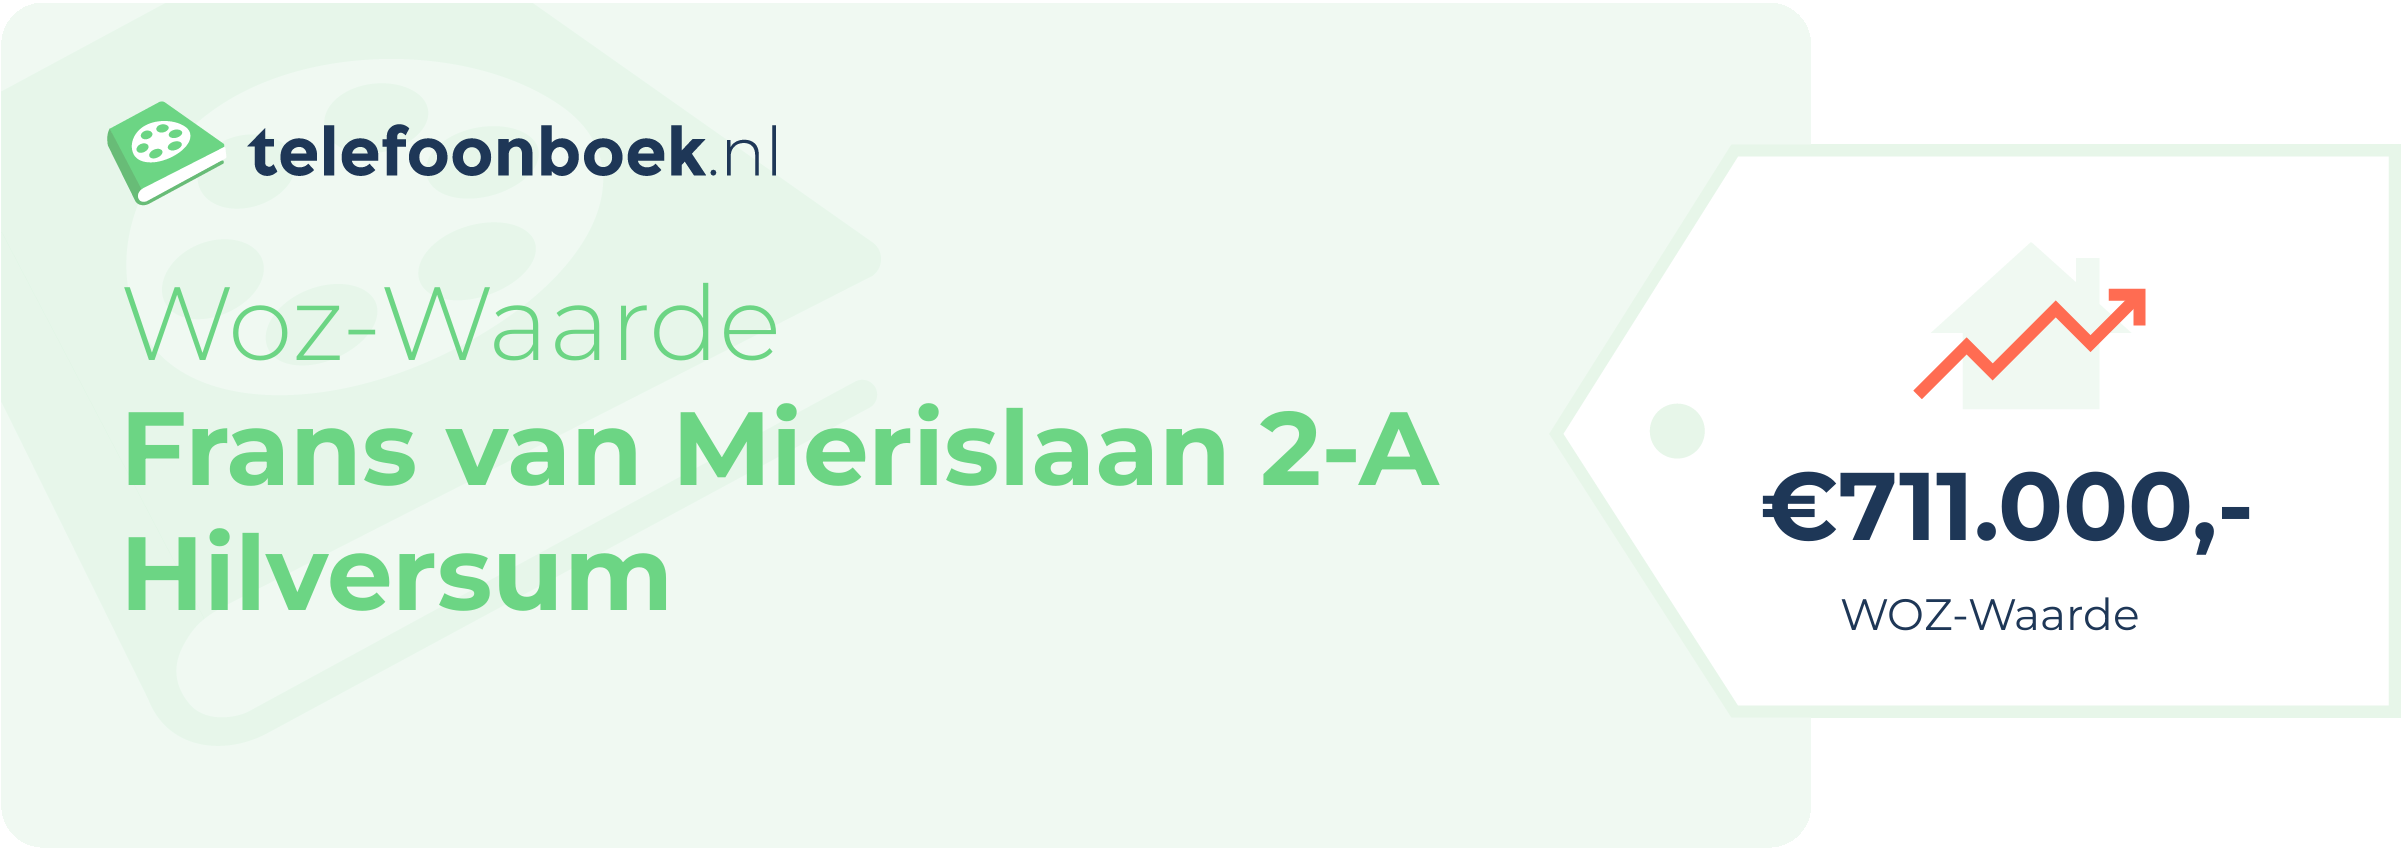 WOZ-waarde Frans Van Mierislaan 2-A Hilversum